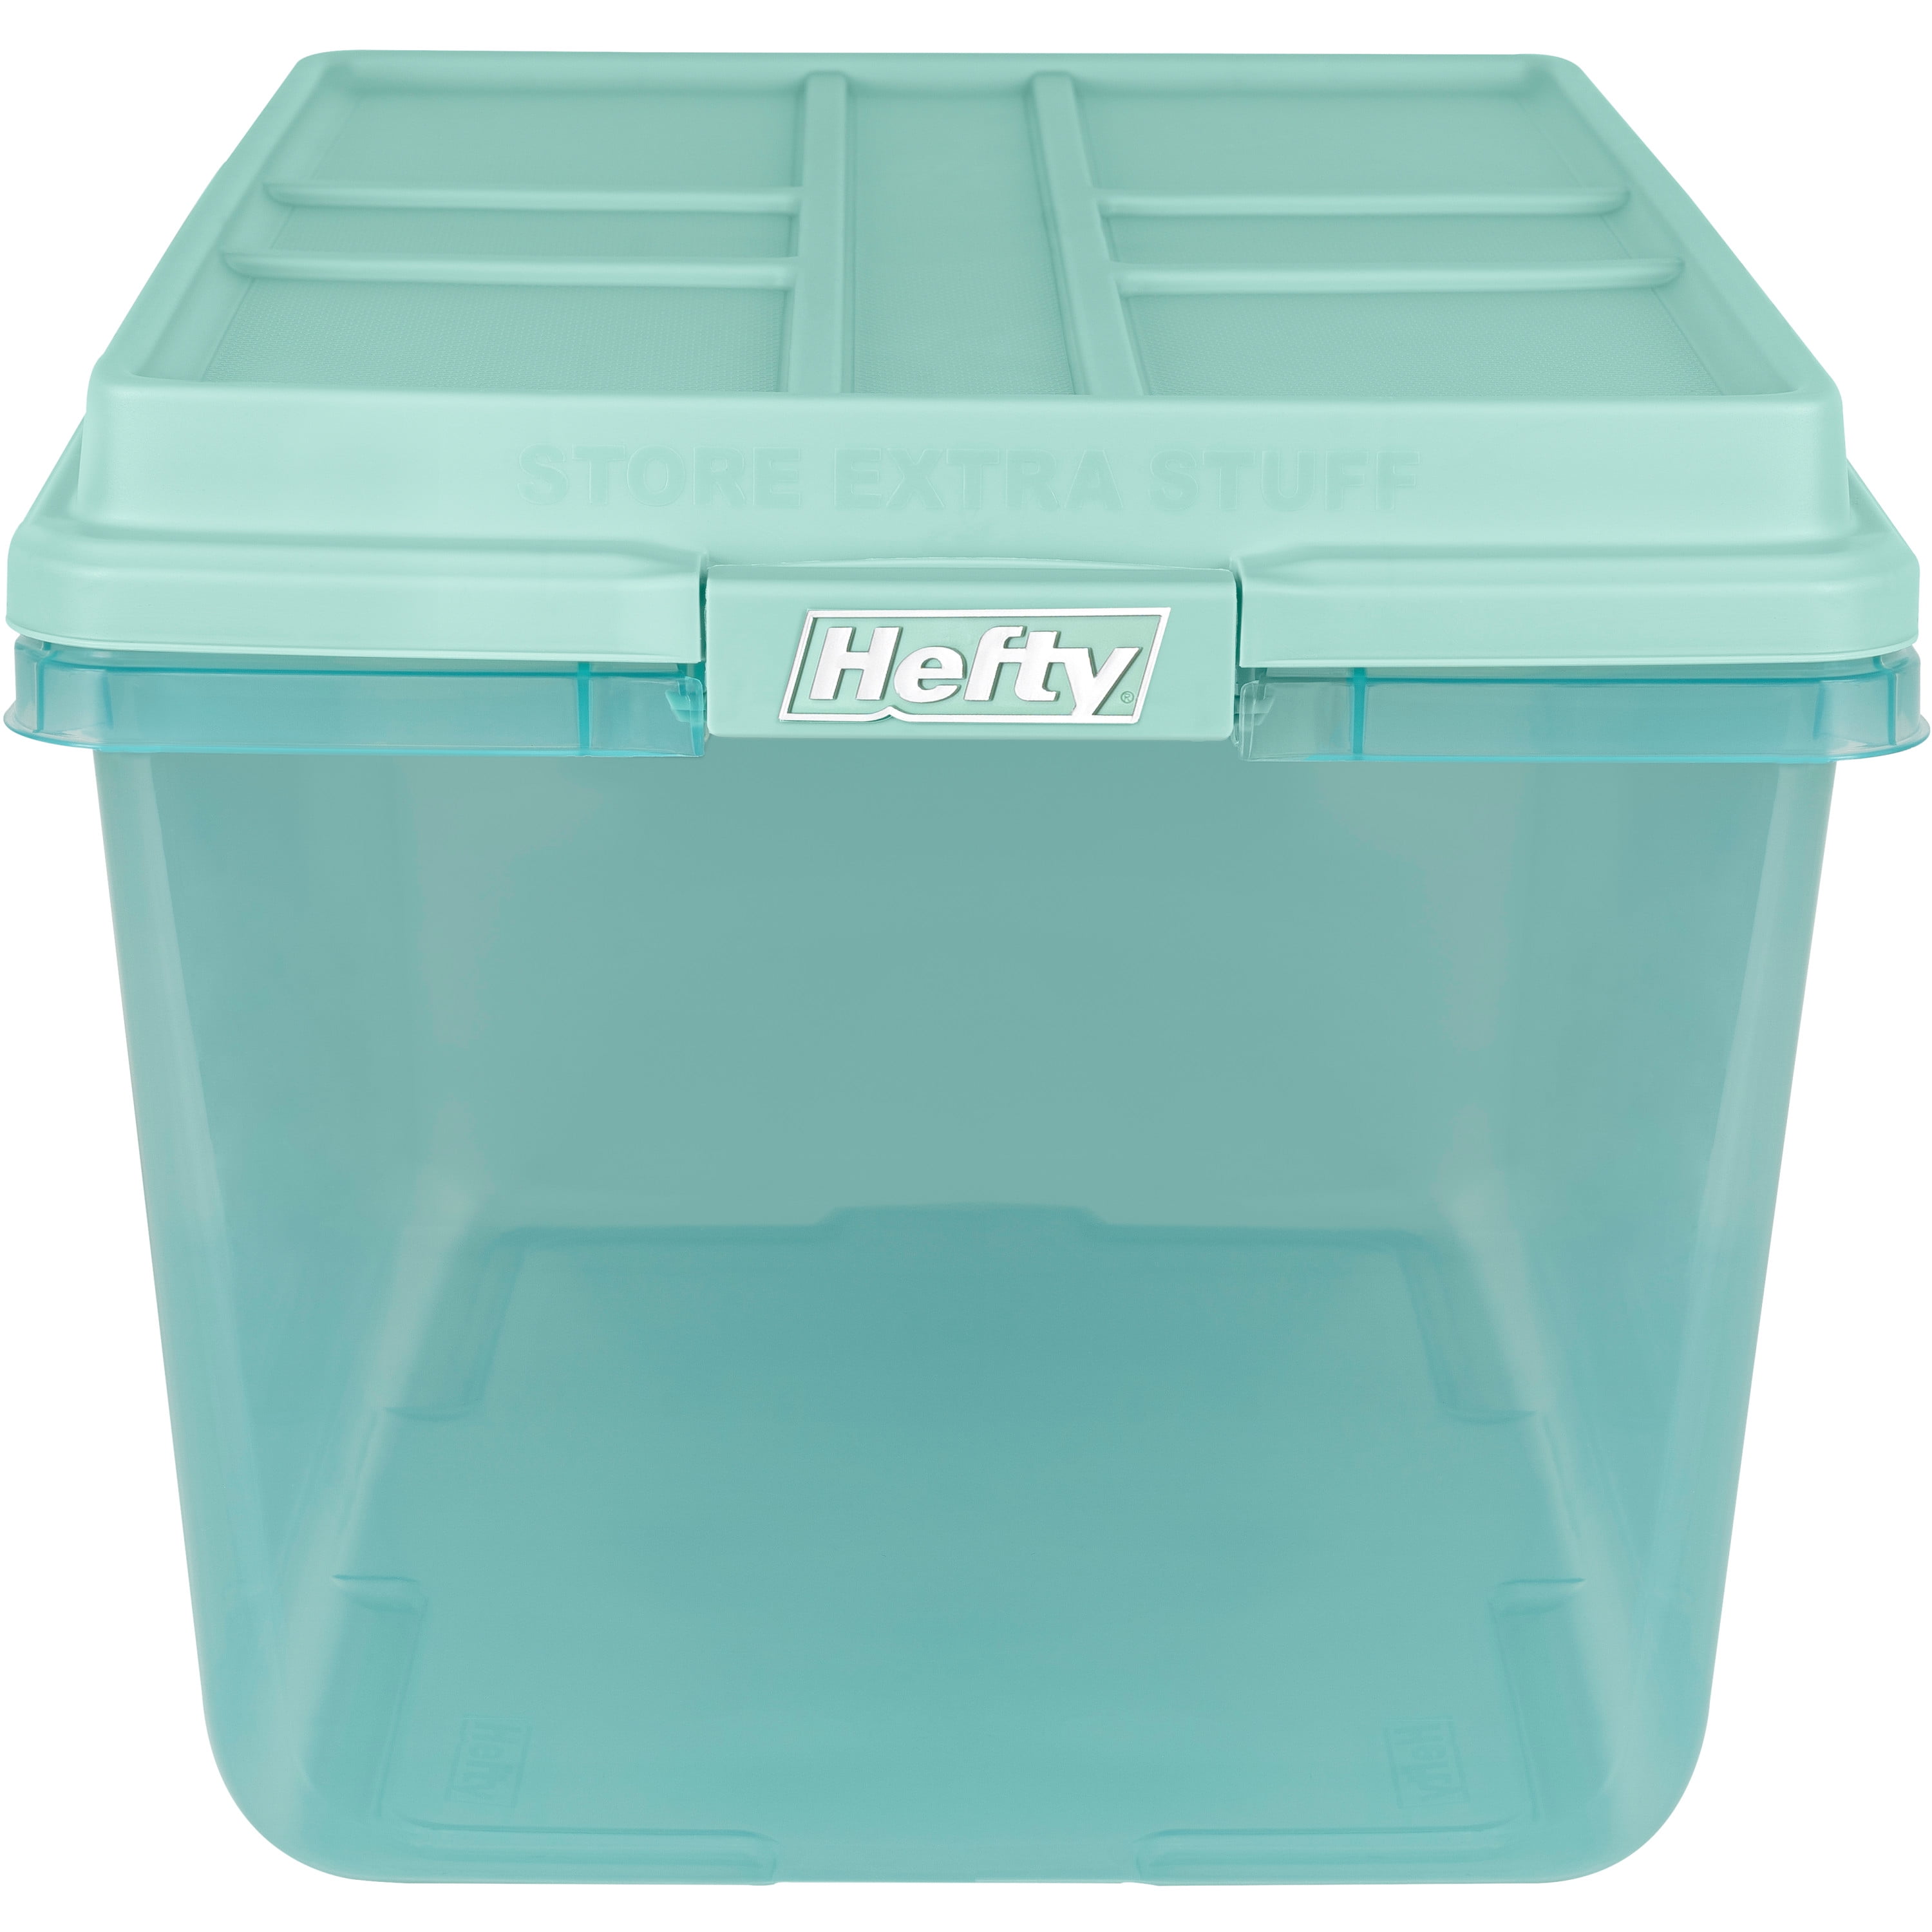 Hefty 72 QT HI-RISE Clear Plastic Storage Bin in Jade Dust Tint 